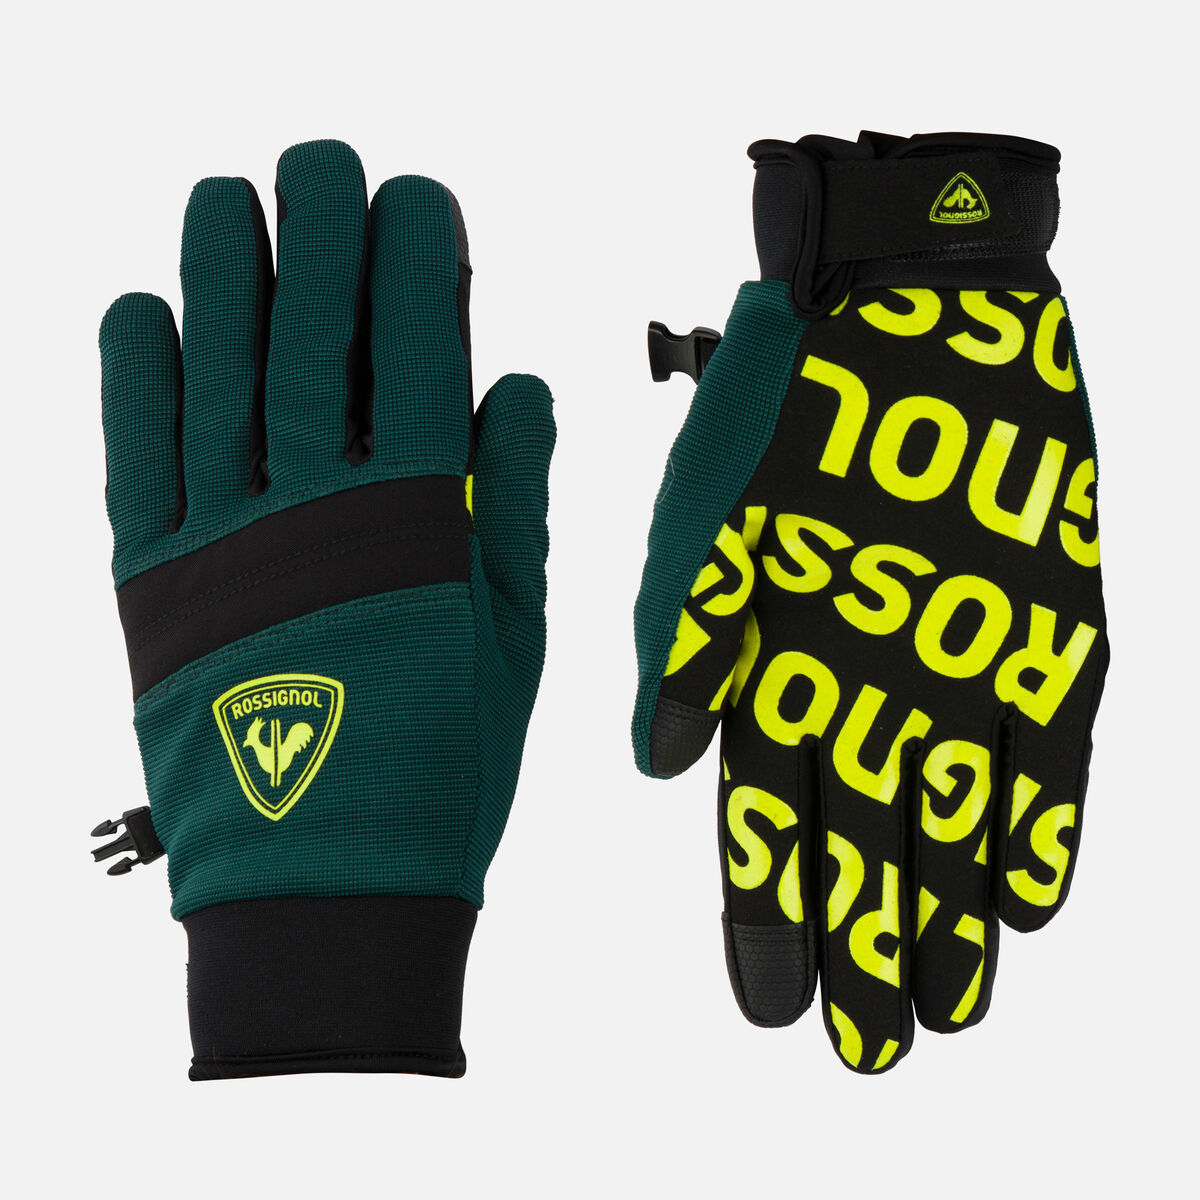 Men's Pro Gloves, Men